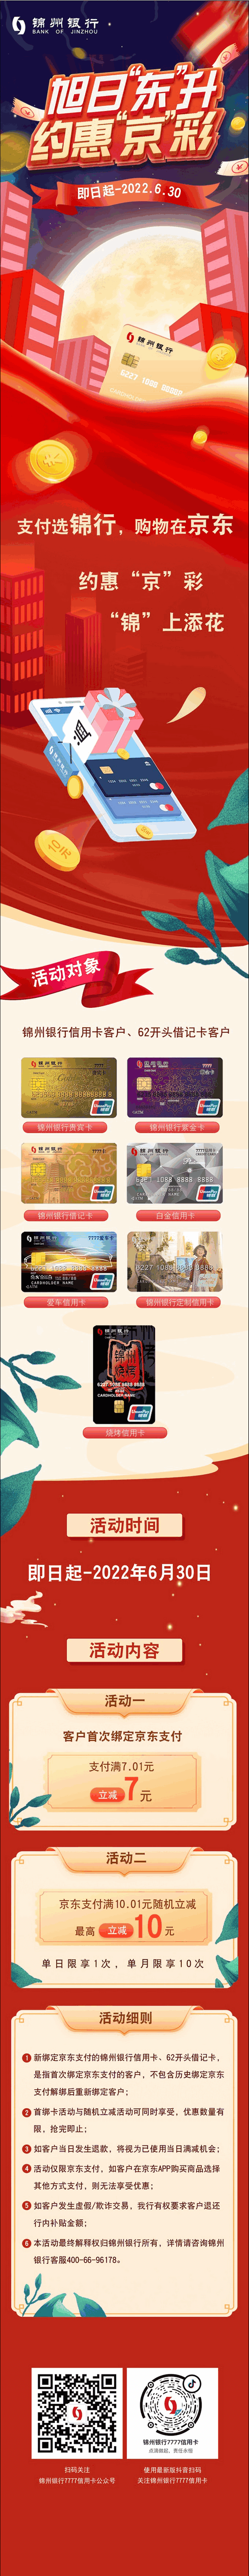 锦州银行借记卡、信用卡京东支付随机立减活动